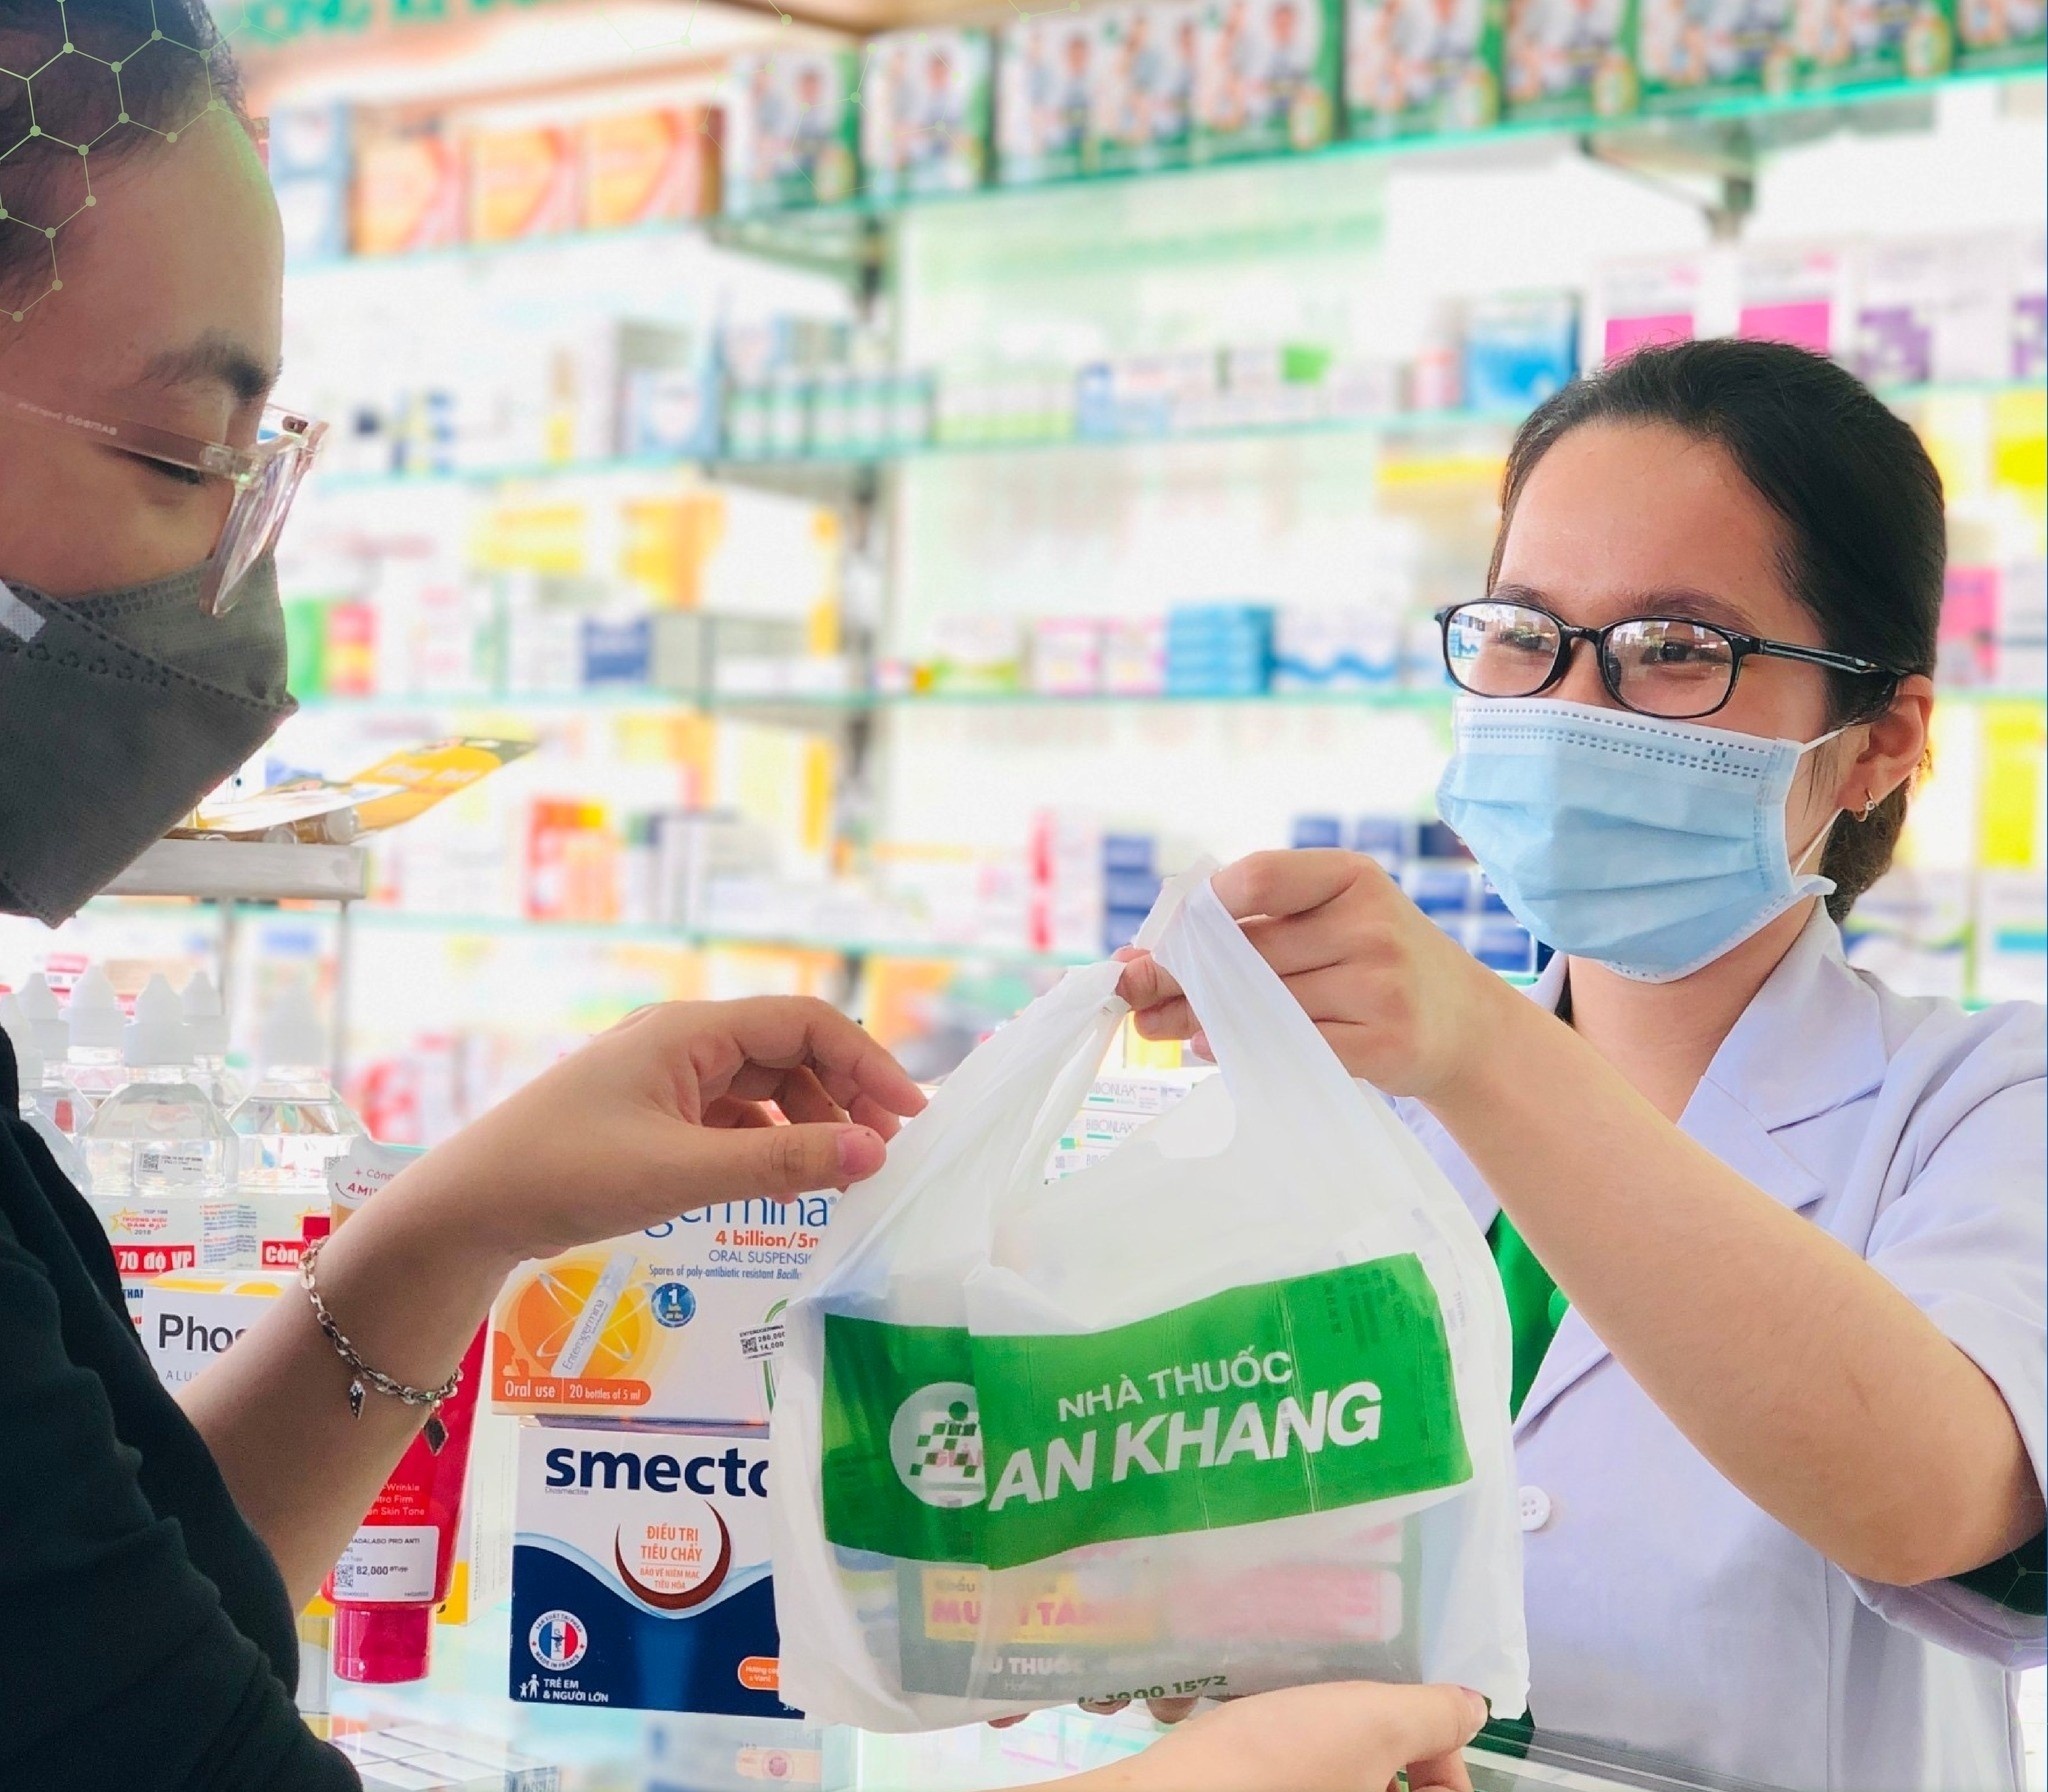 Nhà thuốc An Khang khám chữa miễn phí cho người hoàn cảnh khó khăn-1